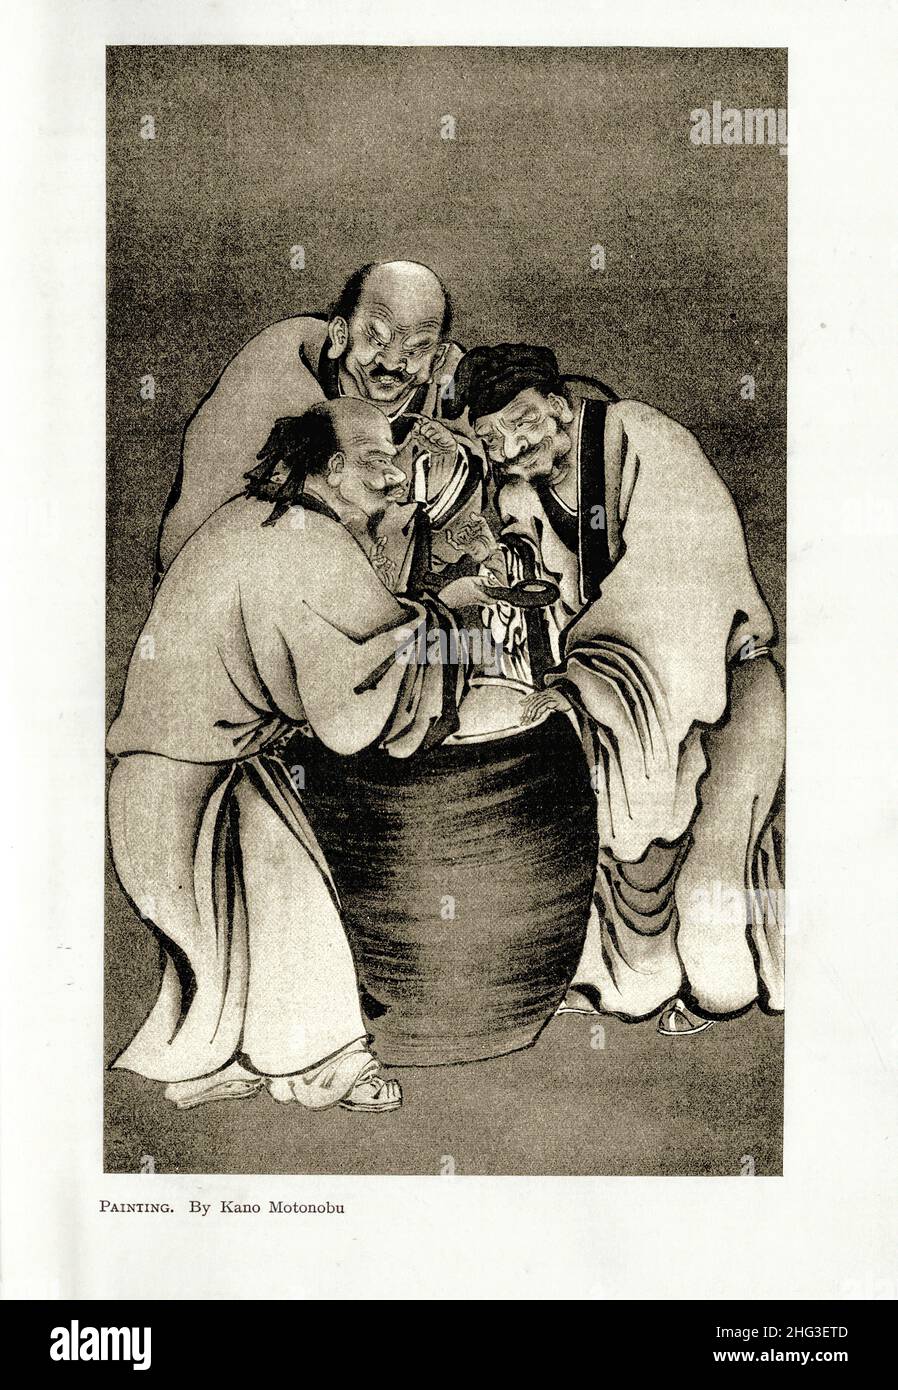 Japanische mittelalterliche Malerei von Kano Motonobu. Reproduktion der Buchillustration von 1912 Kanō Motonobu (1476–1559) war ein japanischer Maler und Kalligraph Stockfoto